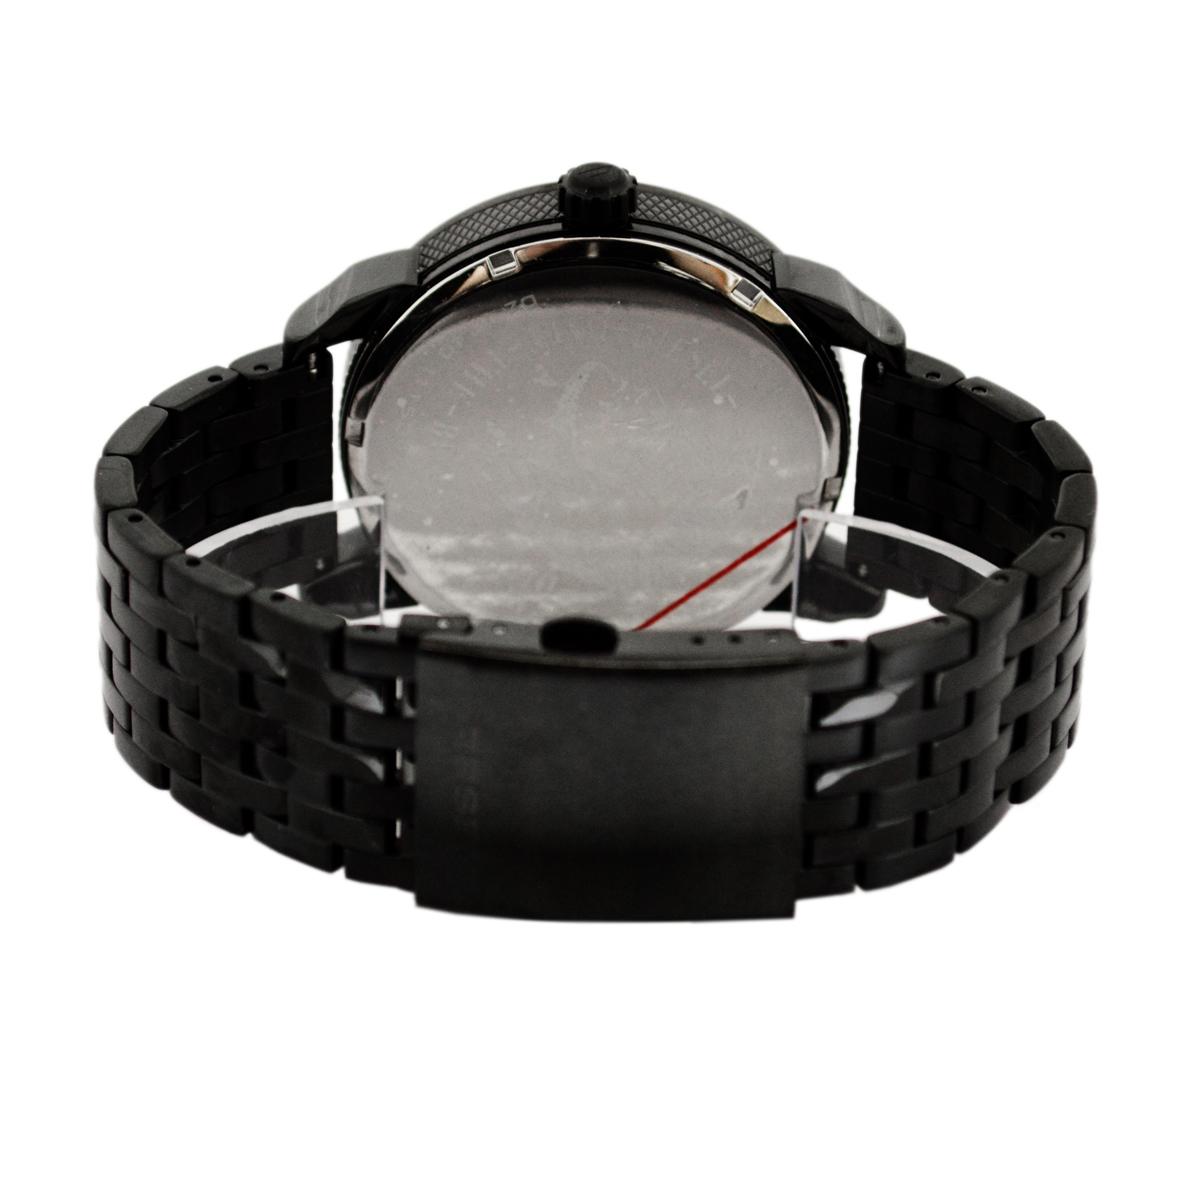 楽天市場送料無料ディーゼル 時計  腕時計  メンズ